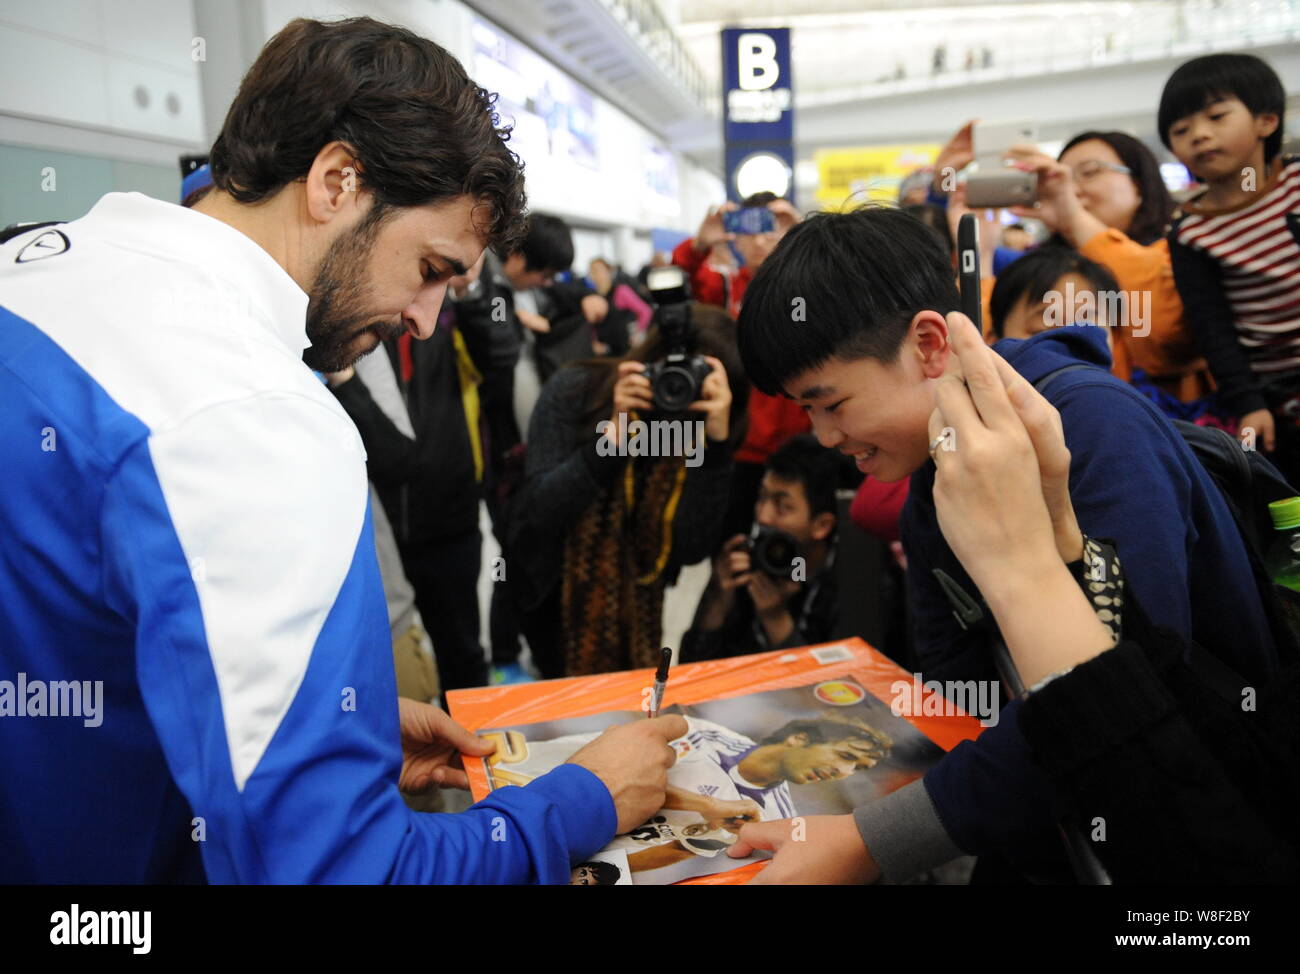 Futbolista español Raúl González Blanco del Cosmos de Nueva York, izquierda, firma autógrafos para los fans como él llega al Aeropuerto Internacional de Hong Kong en Foto de stock